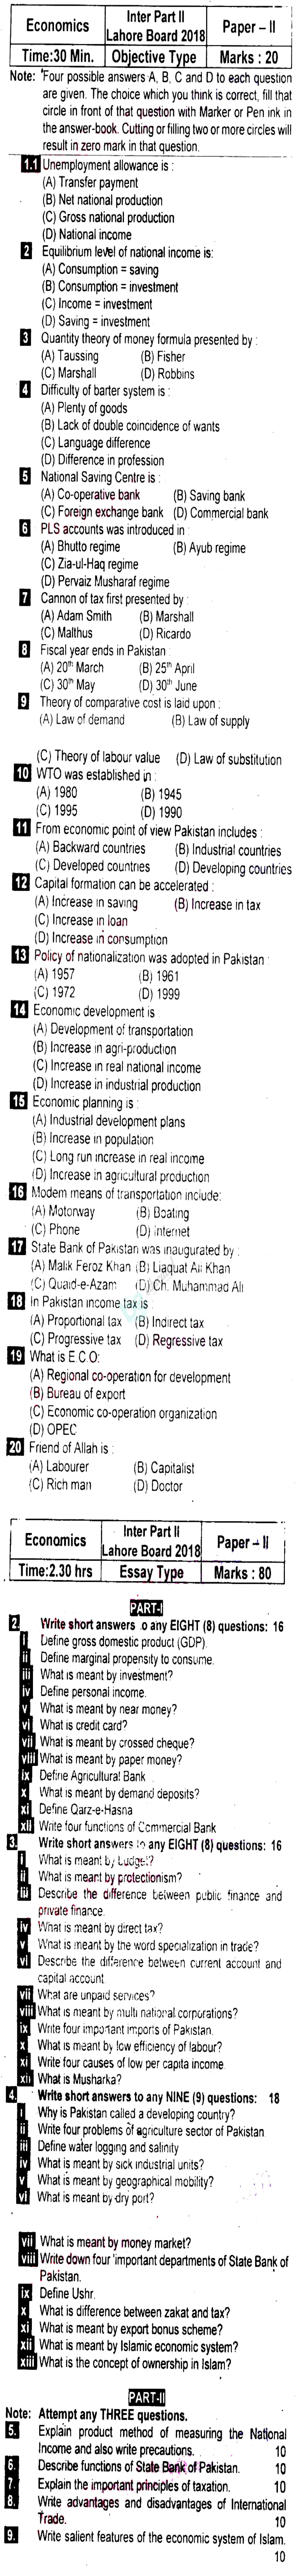 Economics FA Part 2 Past Paper Group 2 BISE Lahore 2018